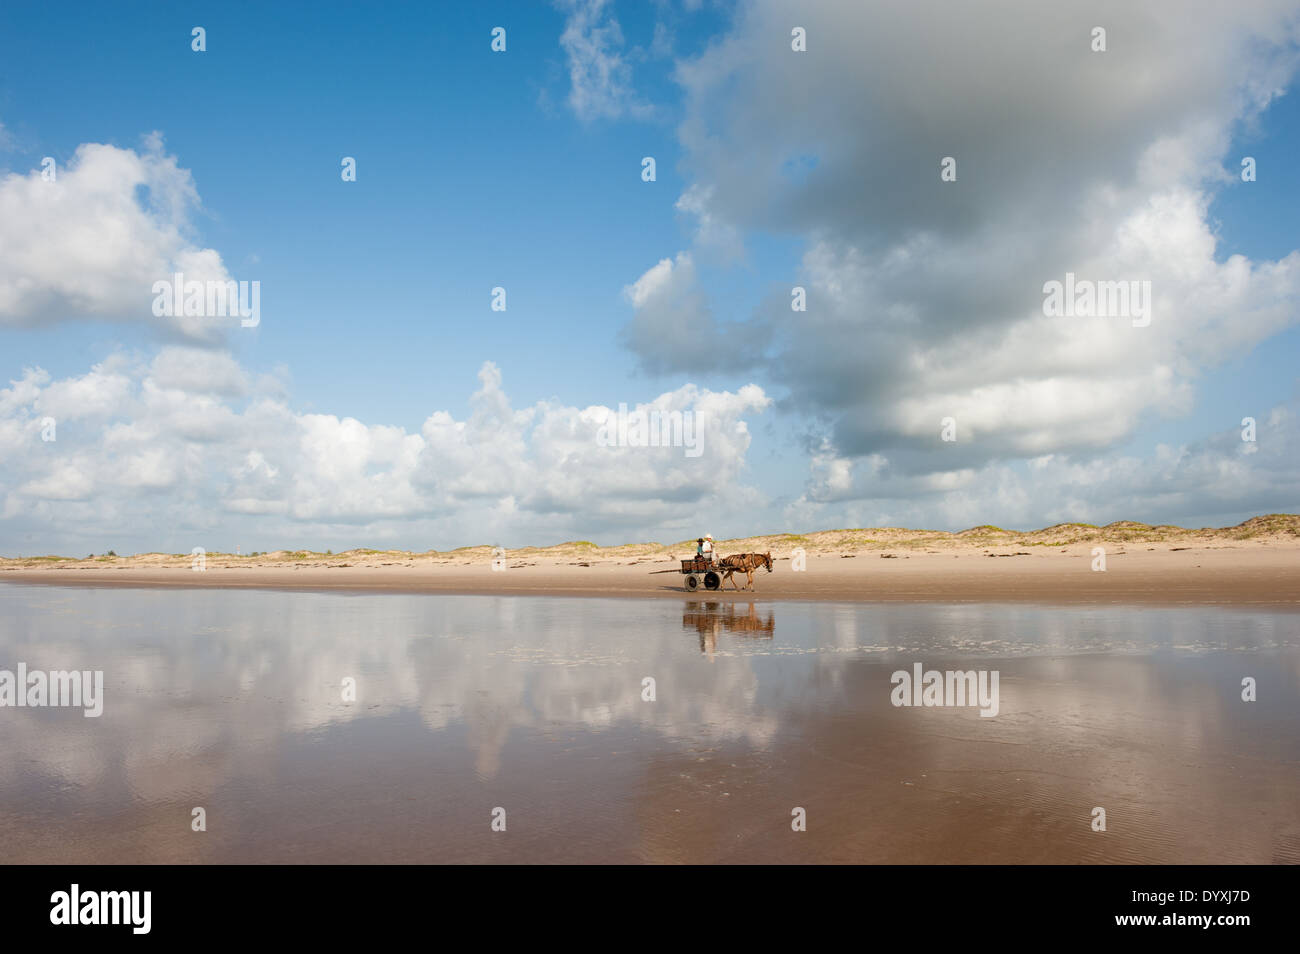 Pirambu, Staat Sergipe, Nord Ost Brasilien. Zwei Männer in ein Pferd und Wagen auf einem leeren Strand mit Wolken spiegeln sich in das Meer. Stockfoto